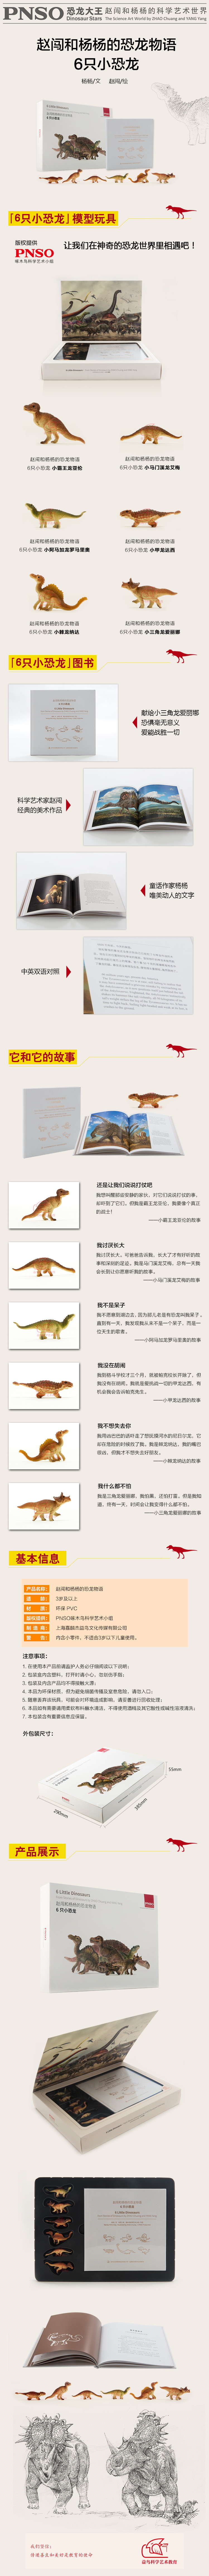 赵闯和杨杨的恐龙物语——六只小恐龙